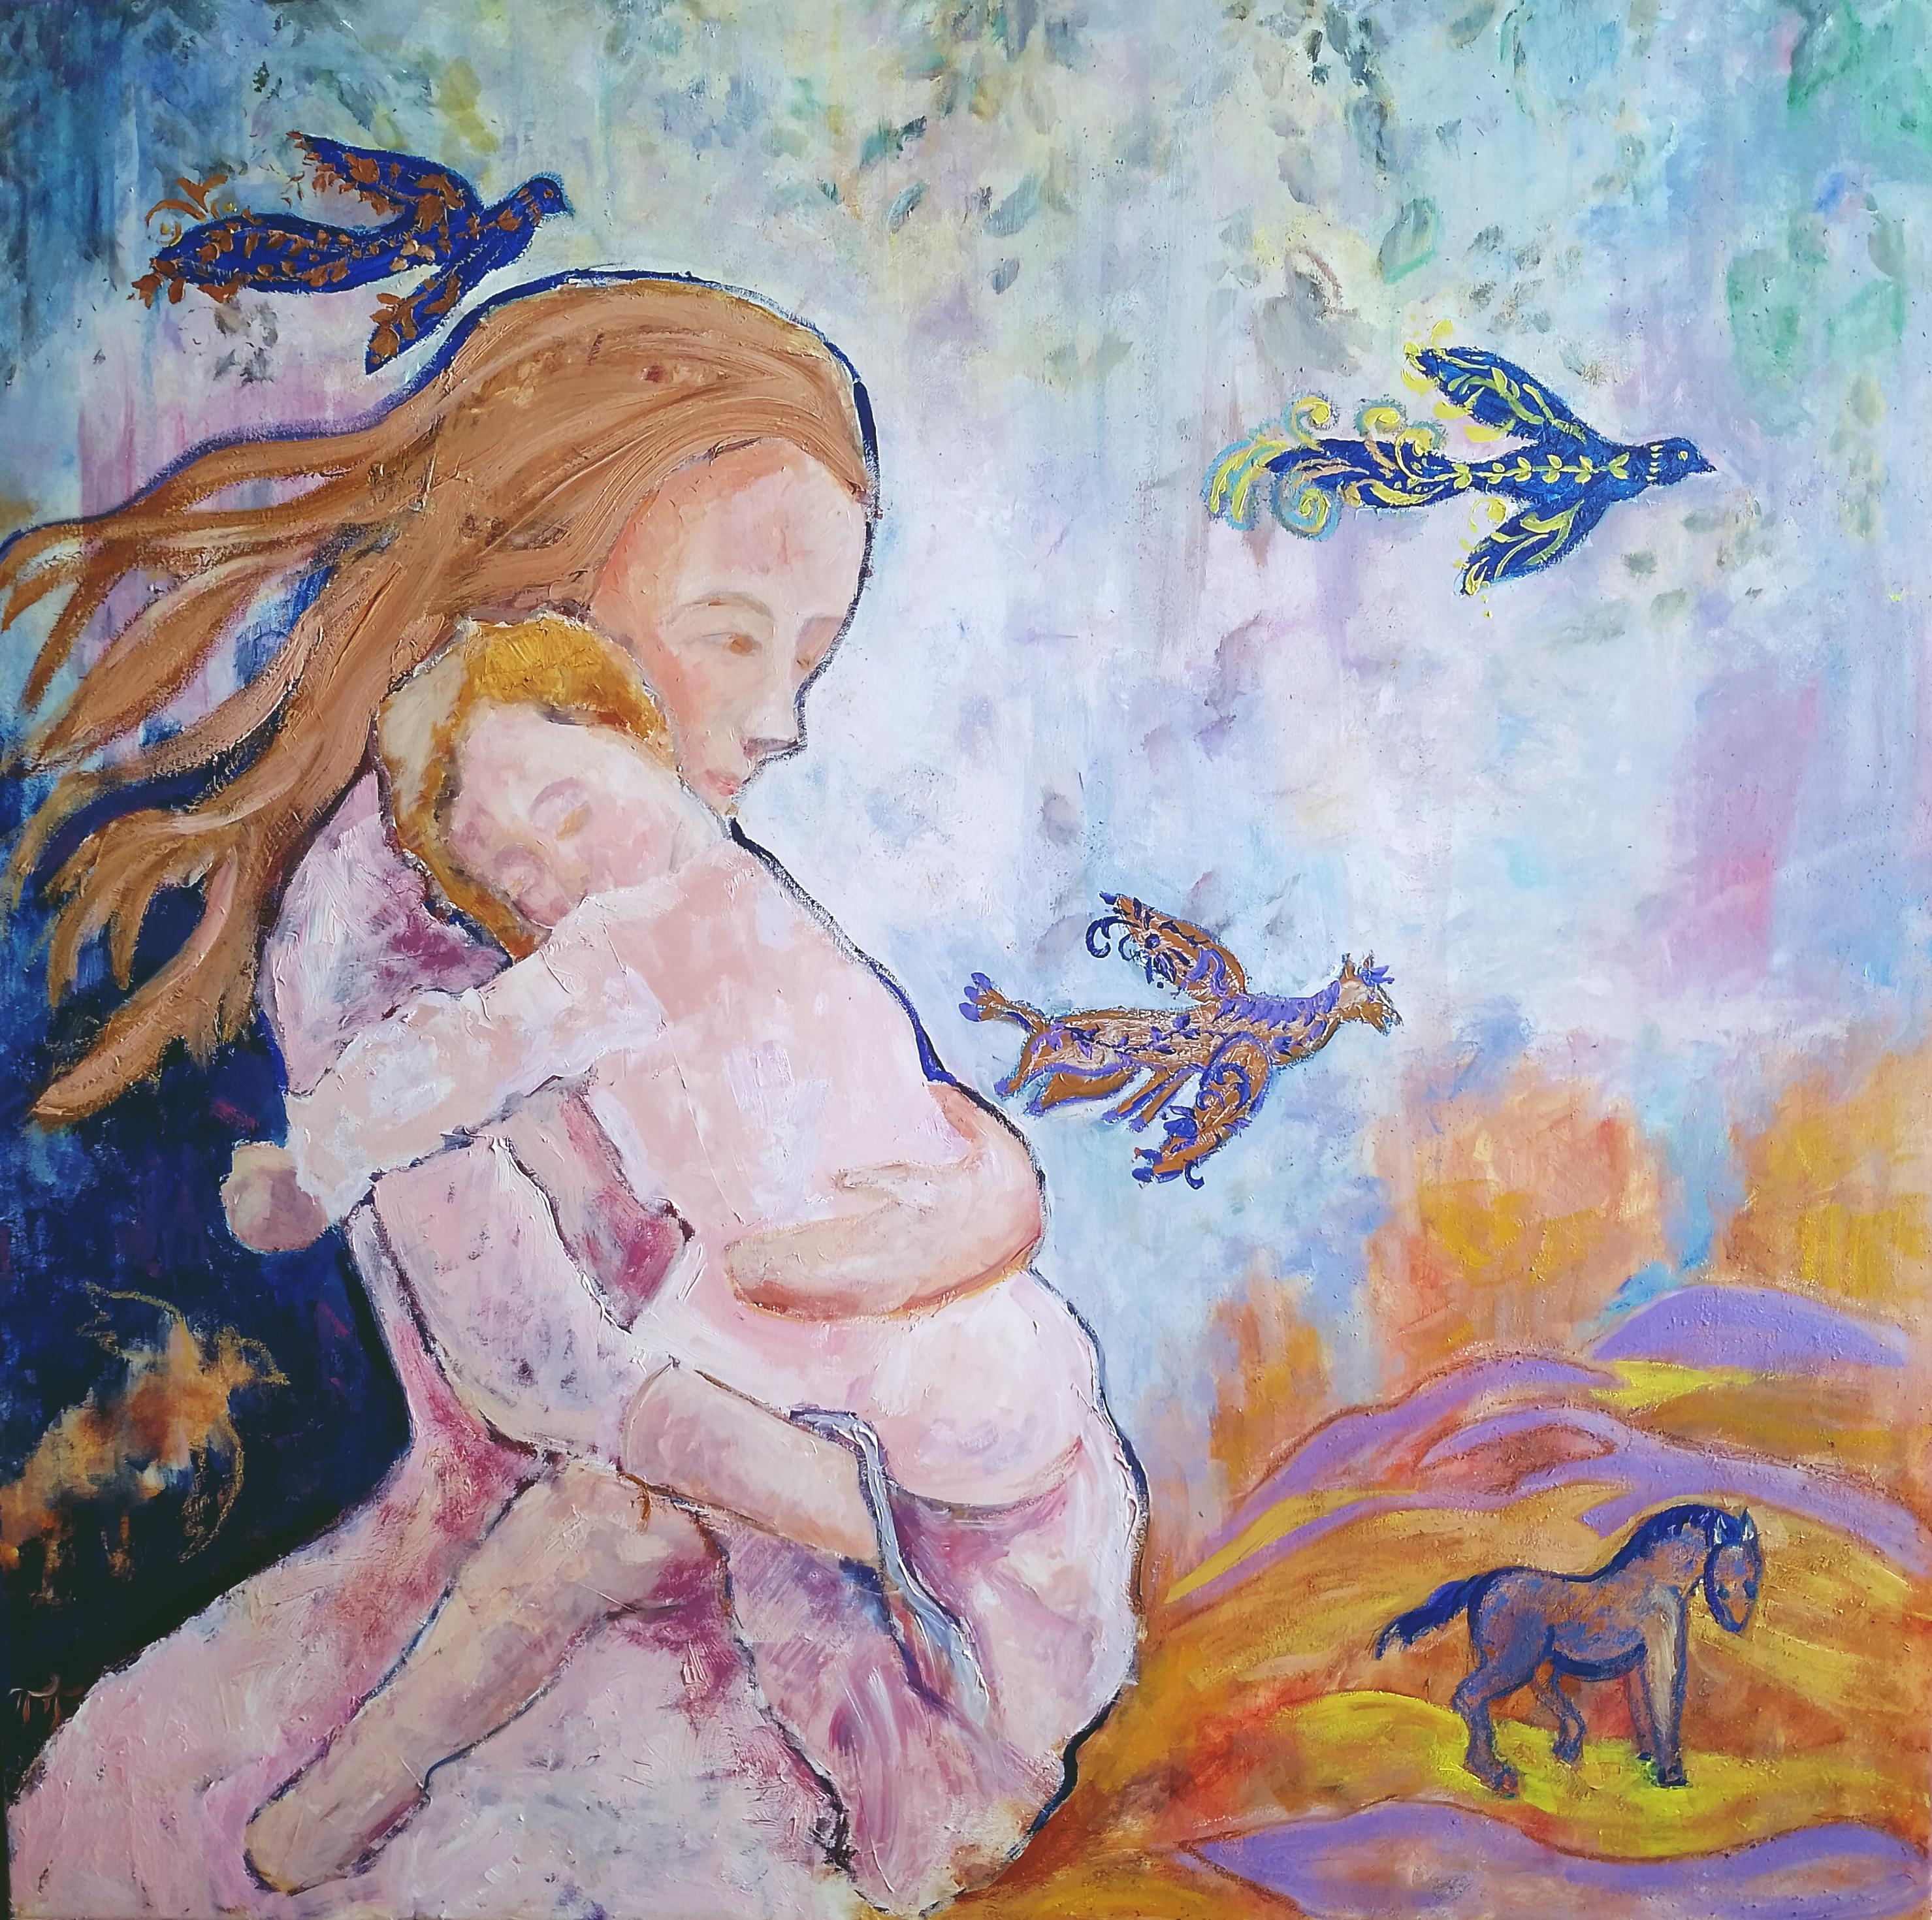 "Journey Home: A Mother's Tale" der ukrainischen Künstlerin Tetiana Pchelnikova ist eine raffinierte Fortsetzung ihrer tiefgreifenden künstlerischen Erforschung der Rolle der Frau in der Gesellschaft. Dieses große Ölgemälde auf einer 80x80 cm großen